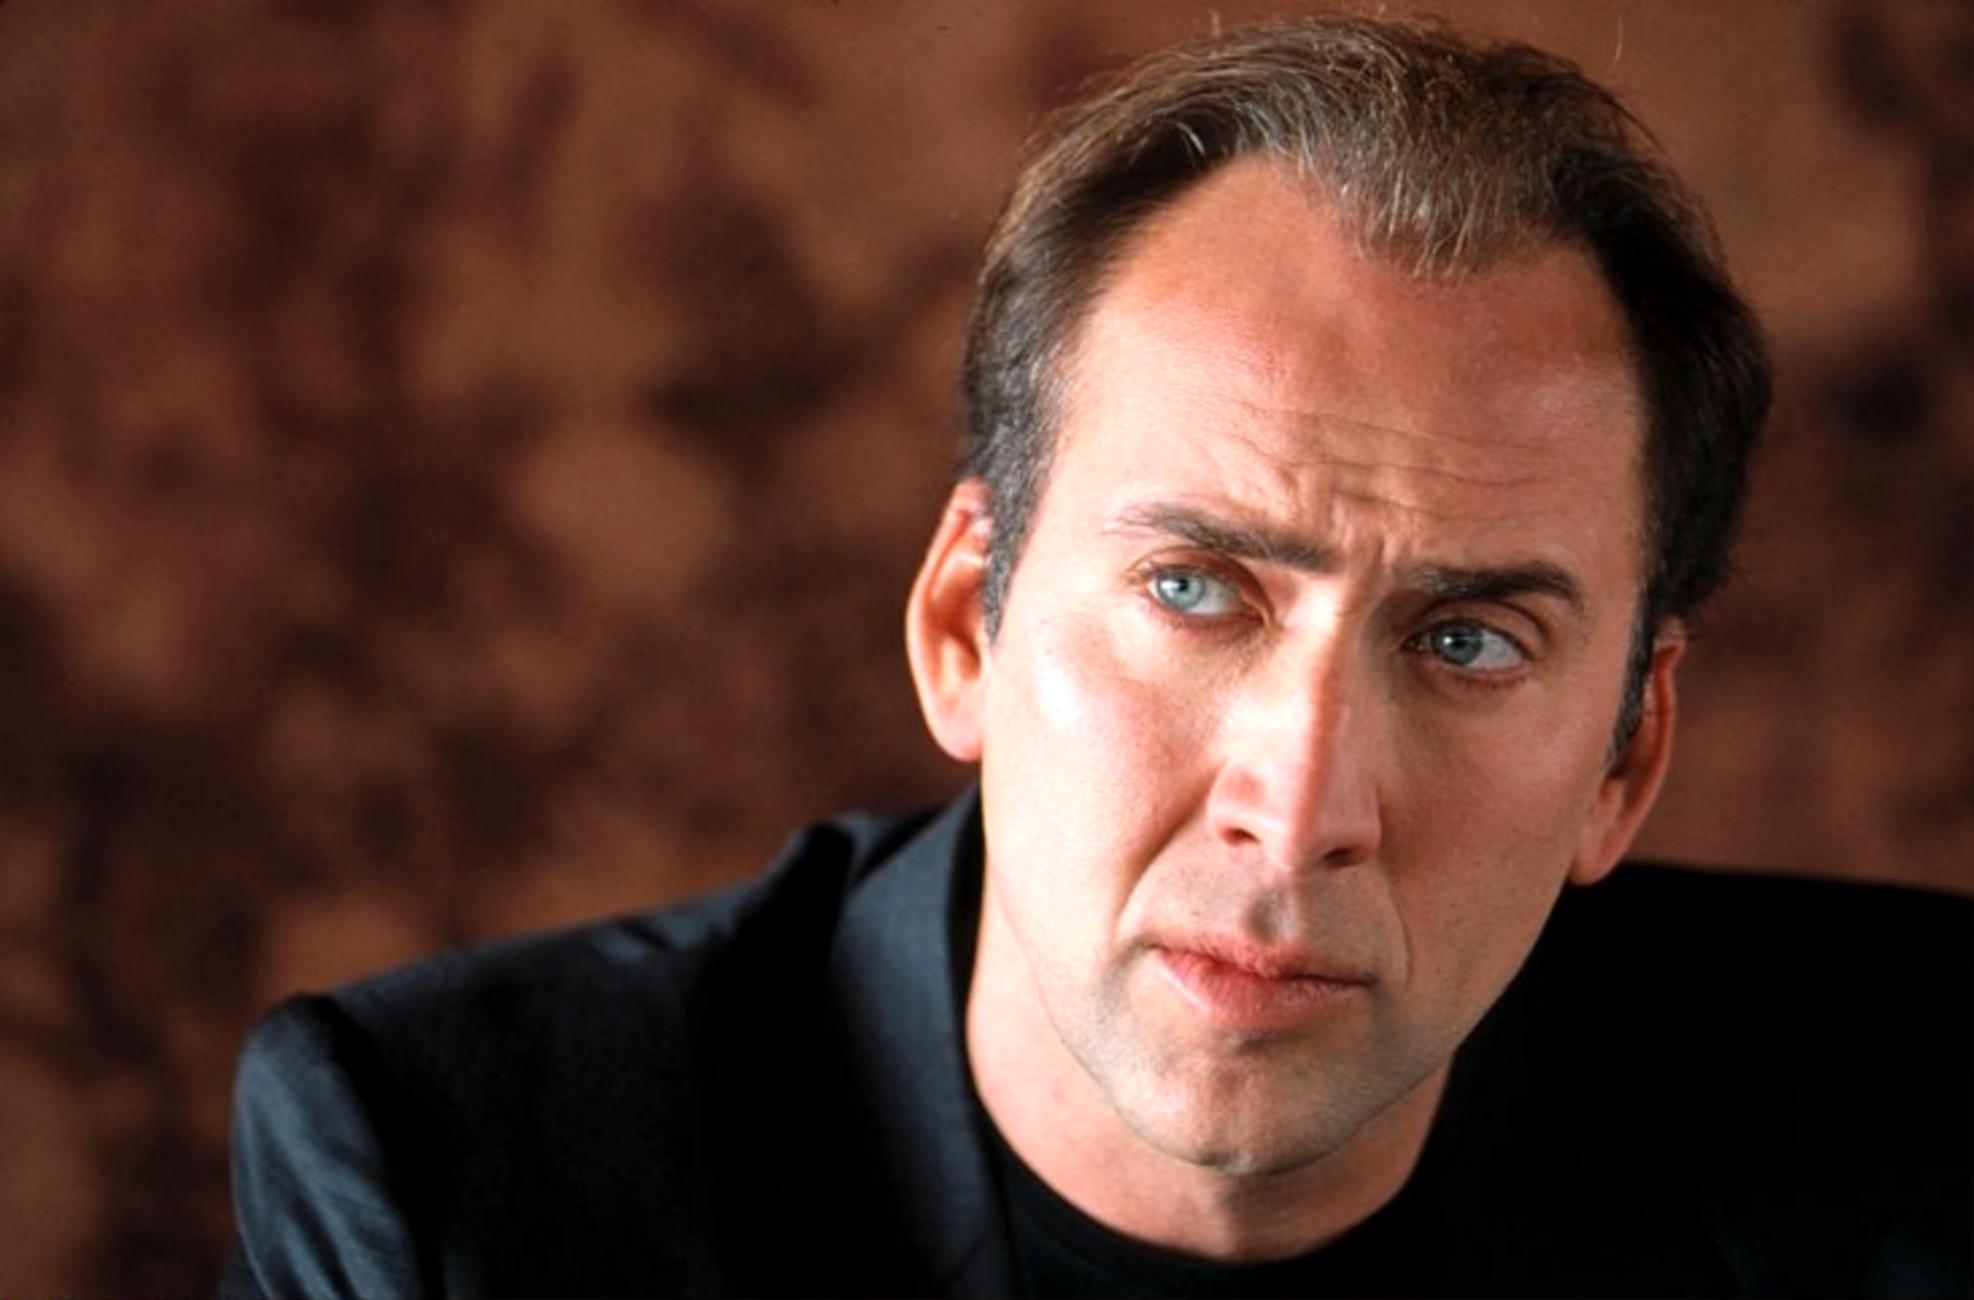 Nicolas-Cage-Celebrity-Wallpaper-HD.jpg